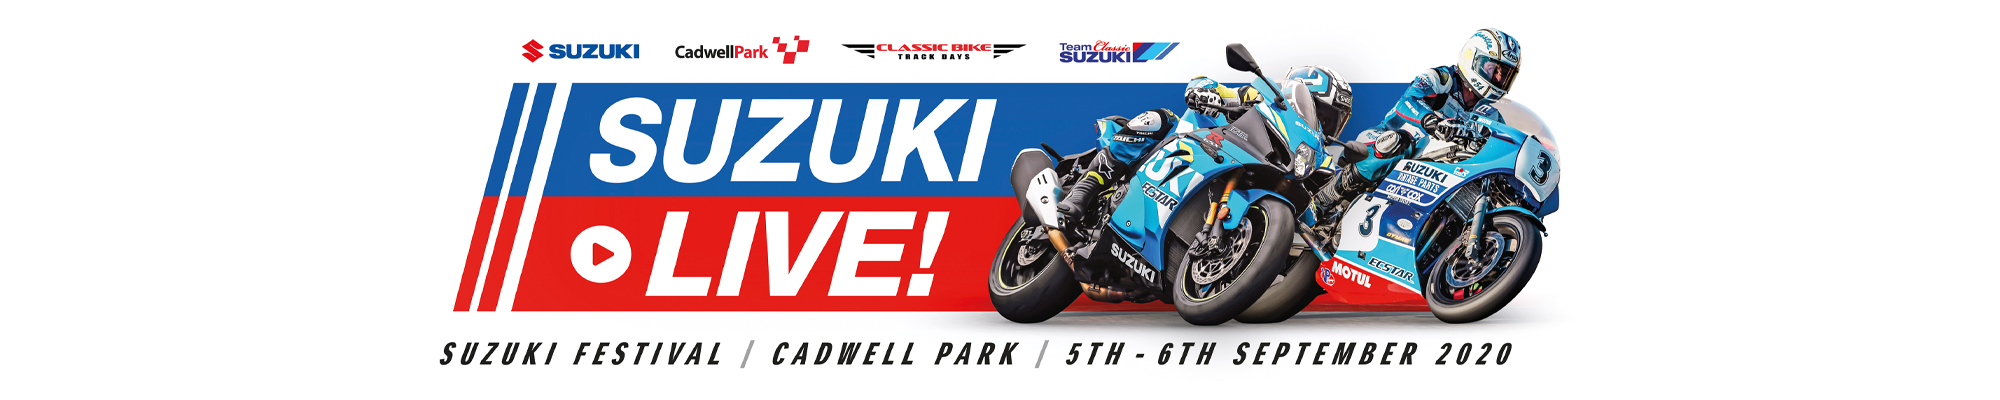 Suzuki Live!